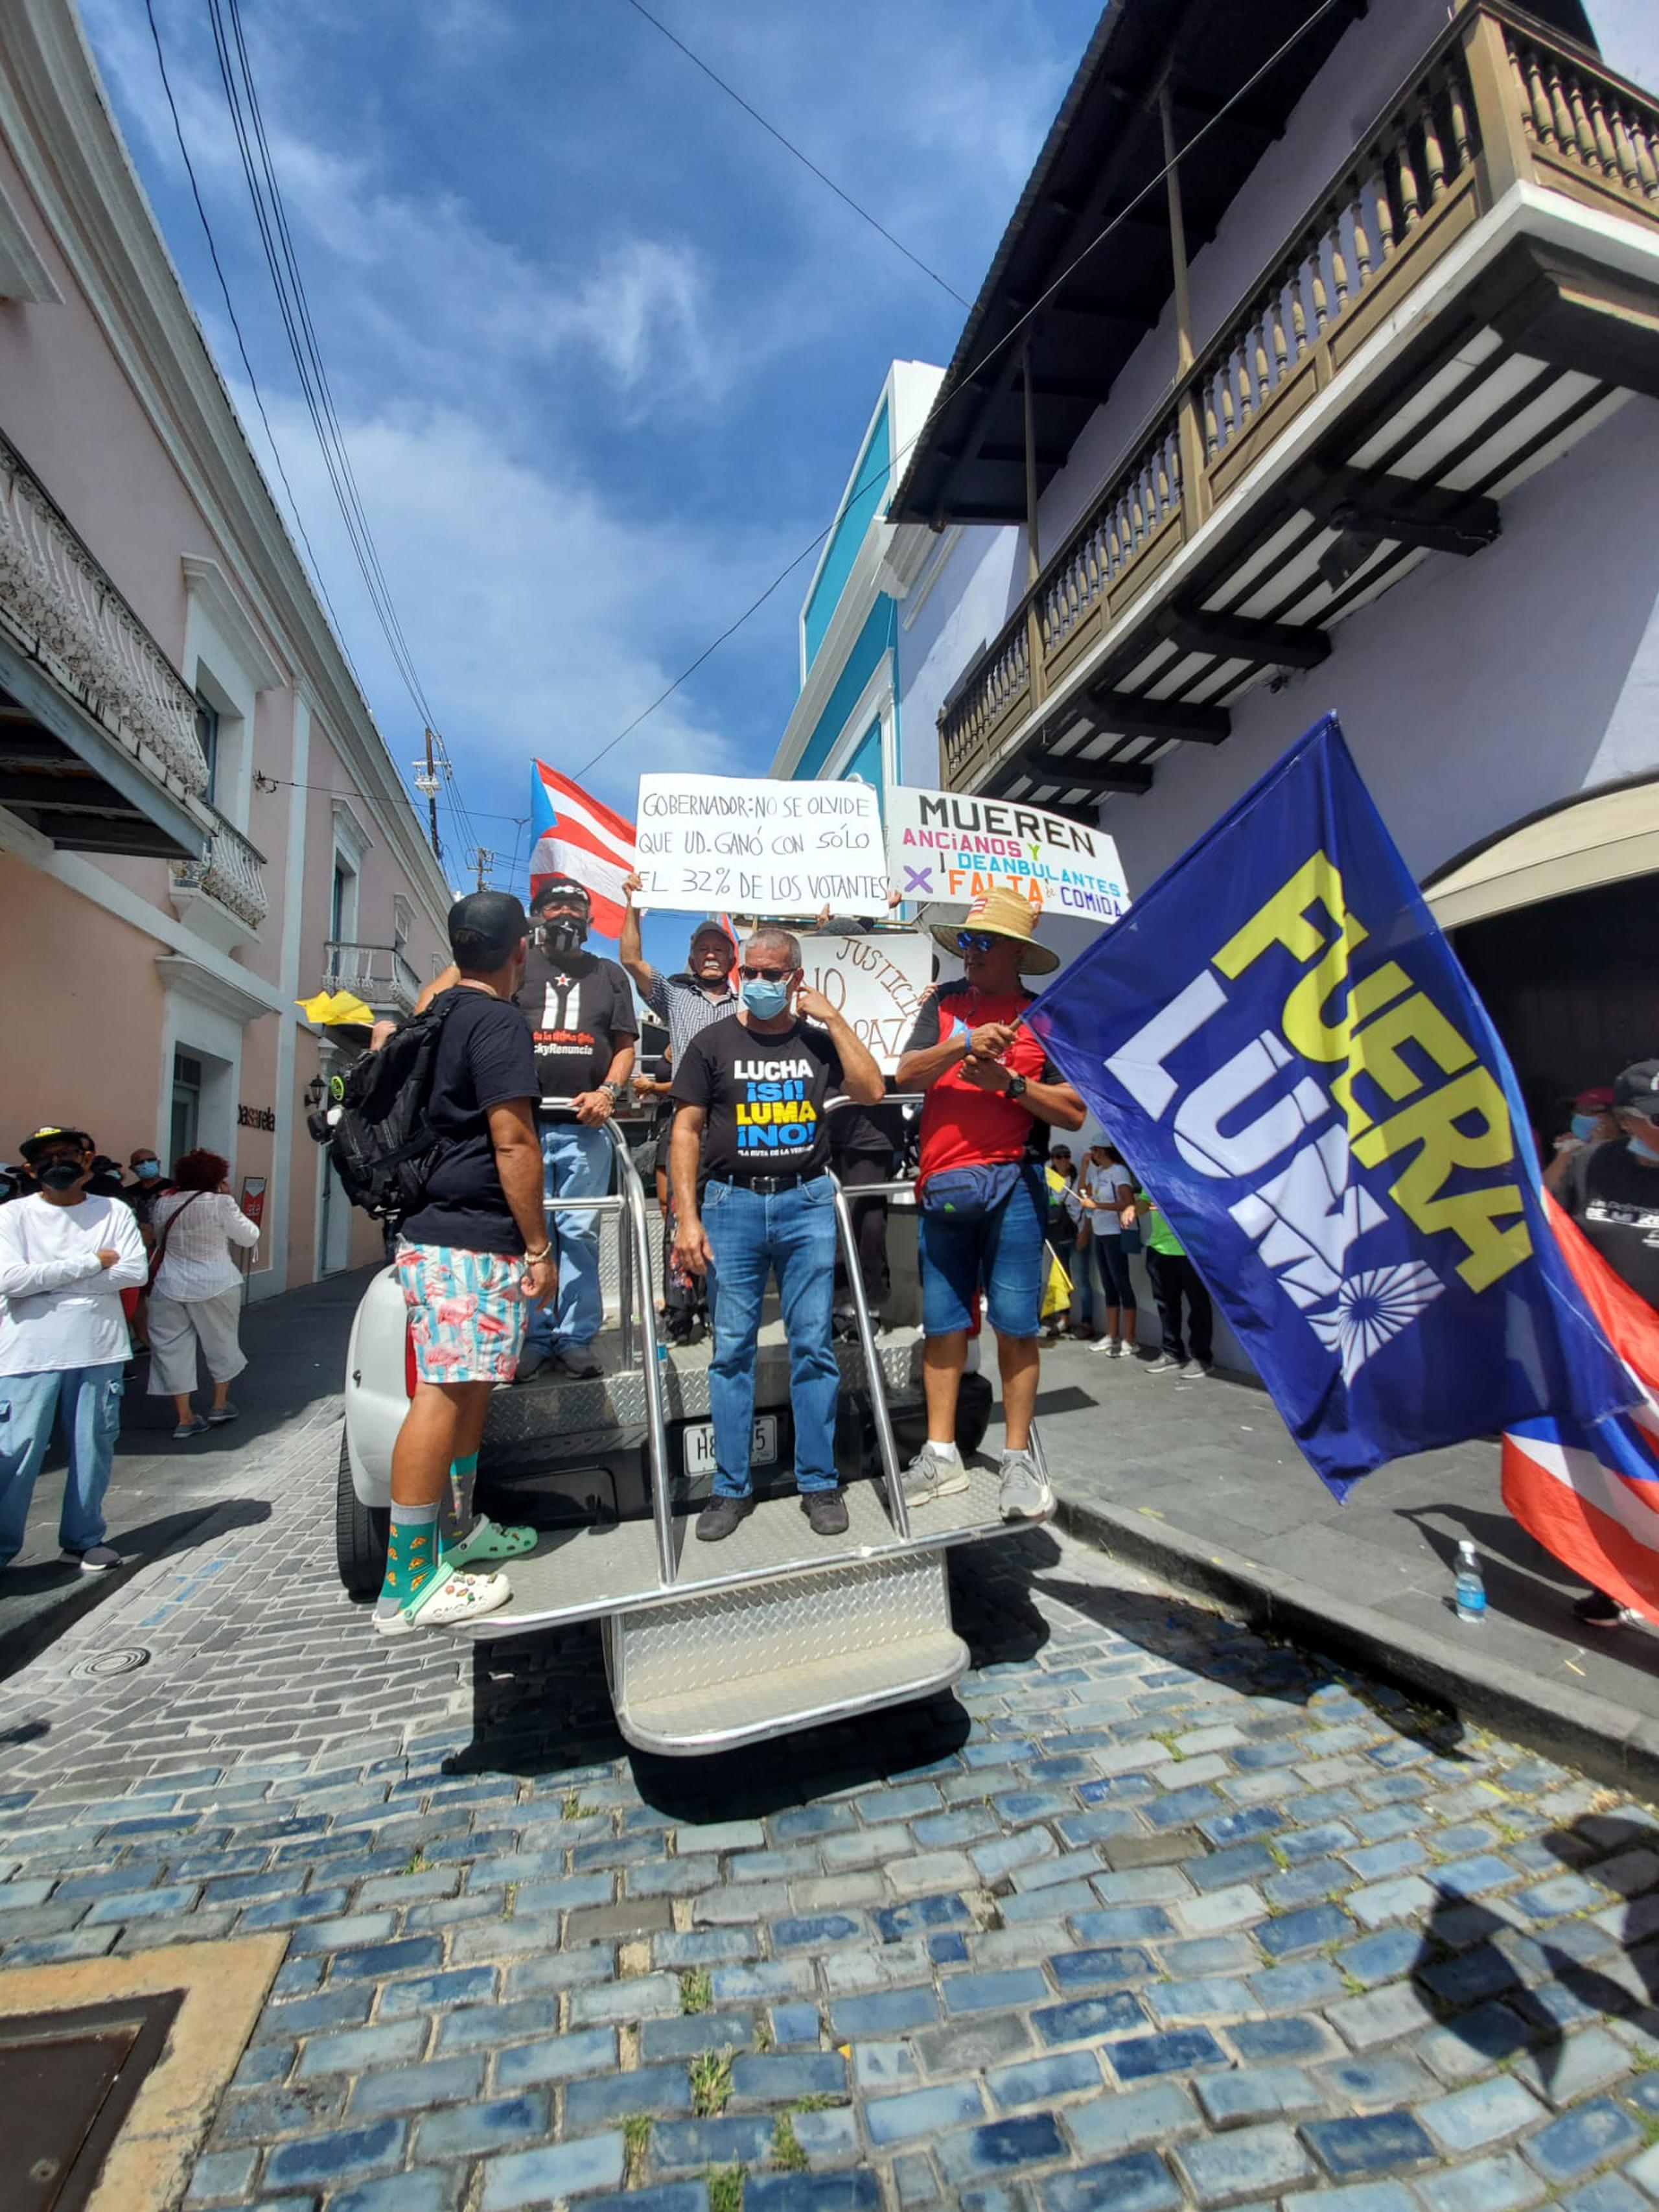 La manifestación partió casi a la 1:00 de la tarde del Parque Luis Muñoz Rivera en Puerta de Tierra, San Juan.